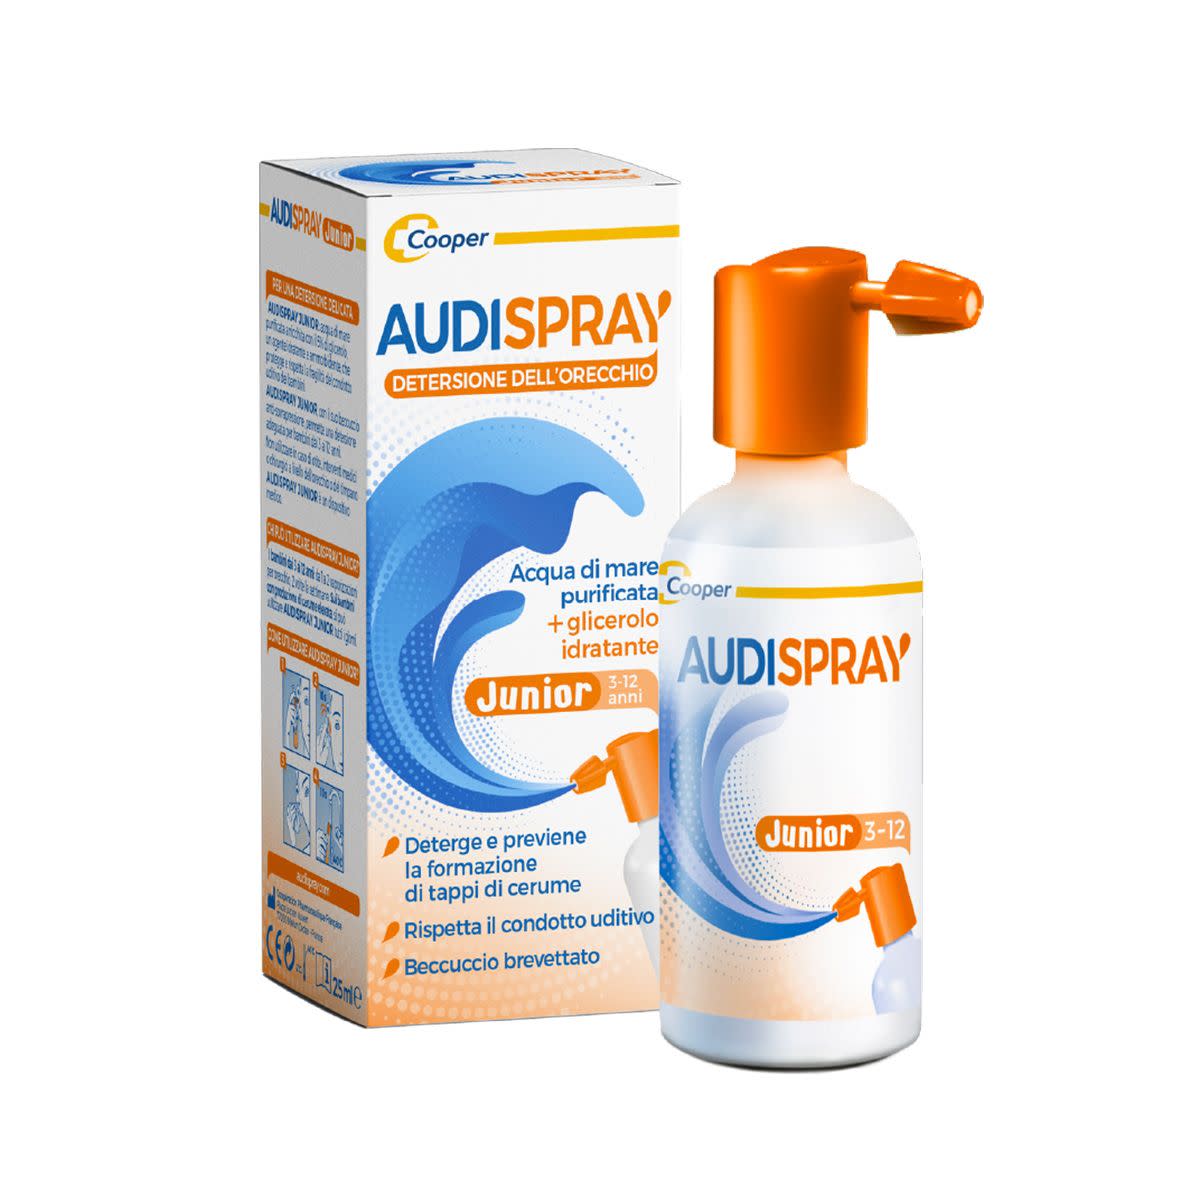 912467281 - Audispray Junior Spray Igiene Orecchio 25ml - 7870788_2.jpg